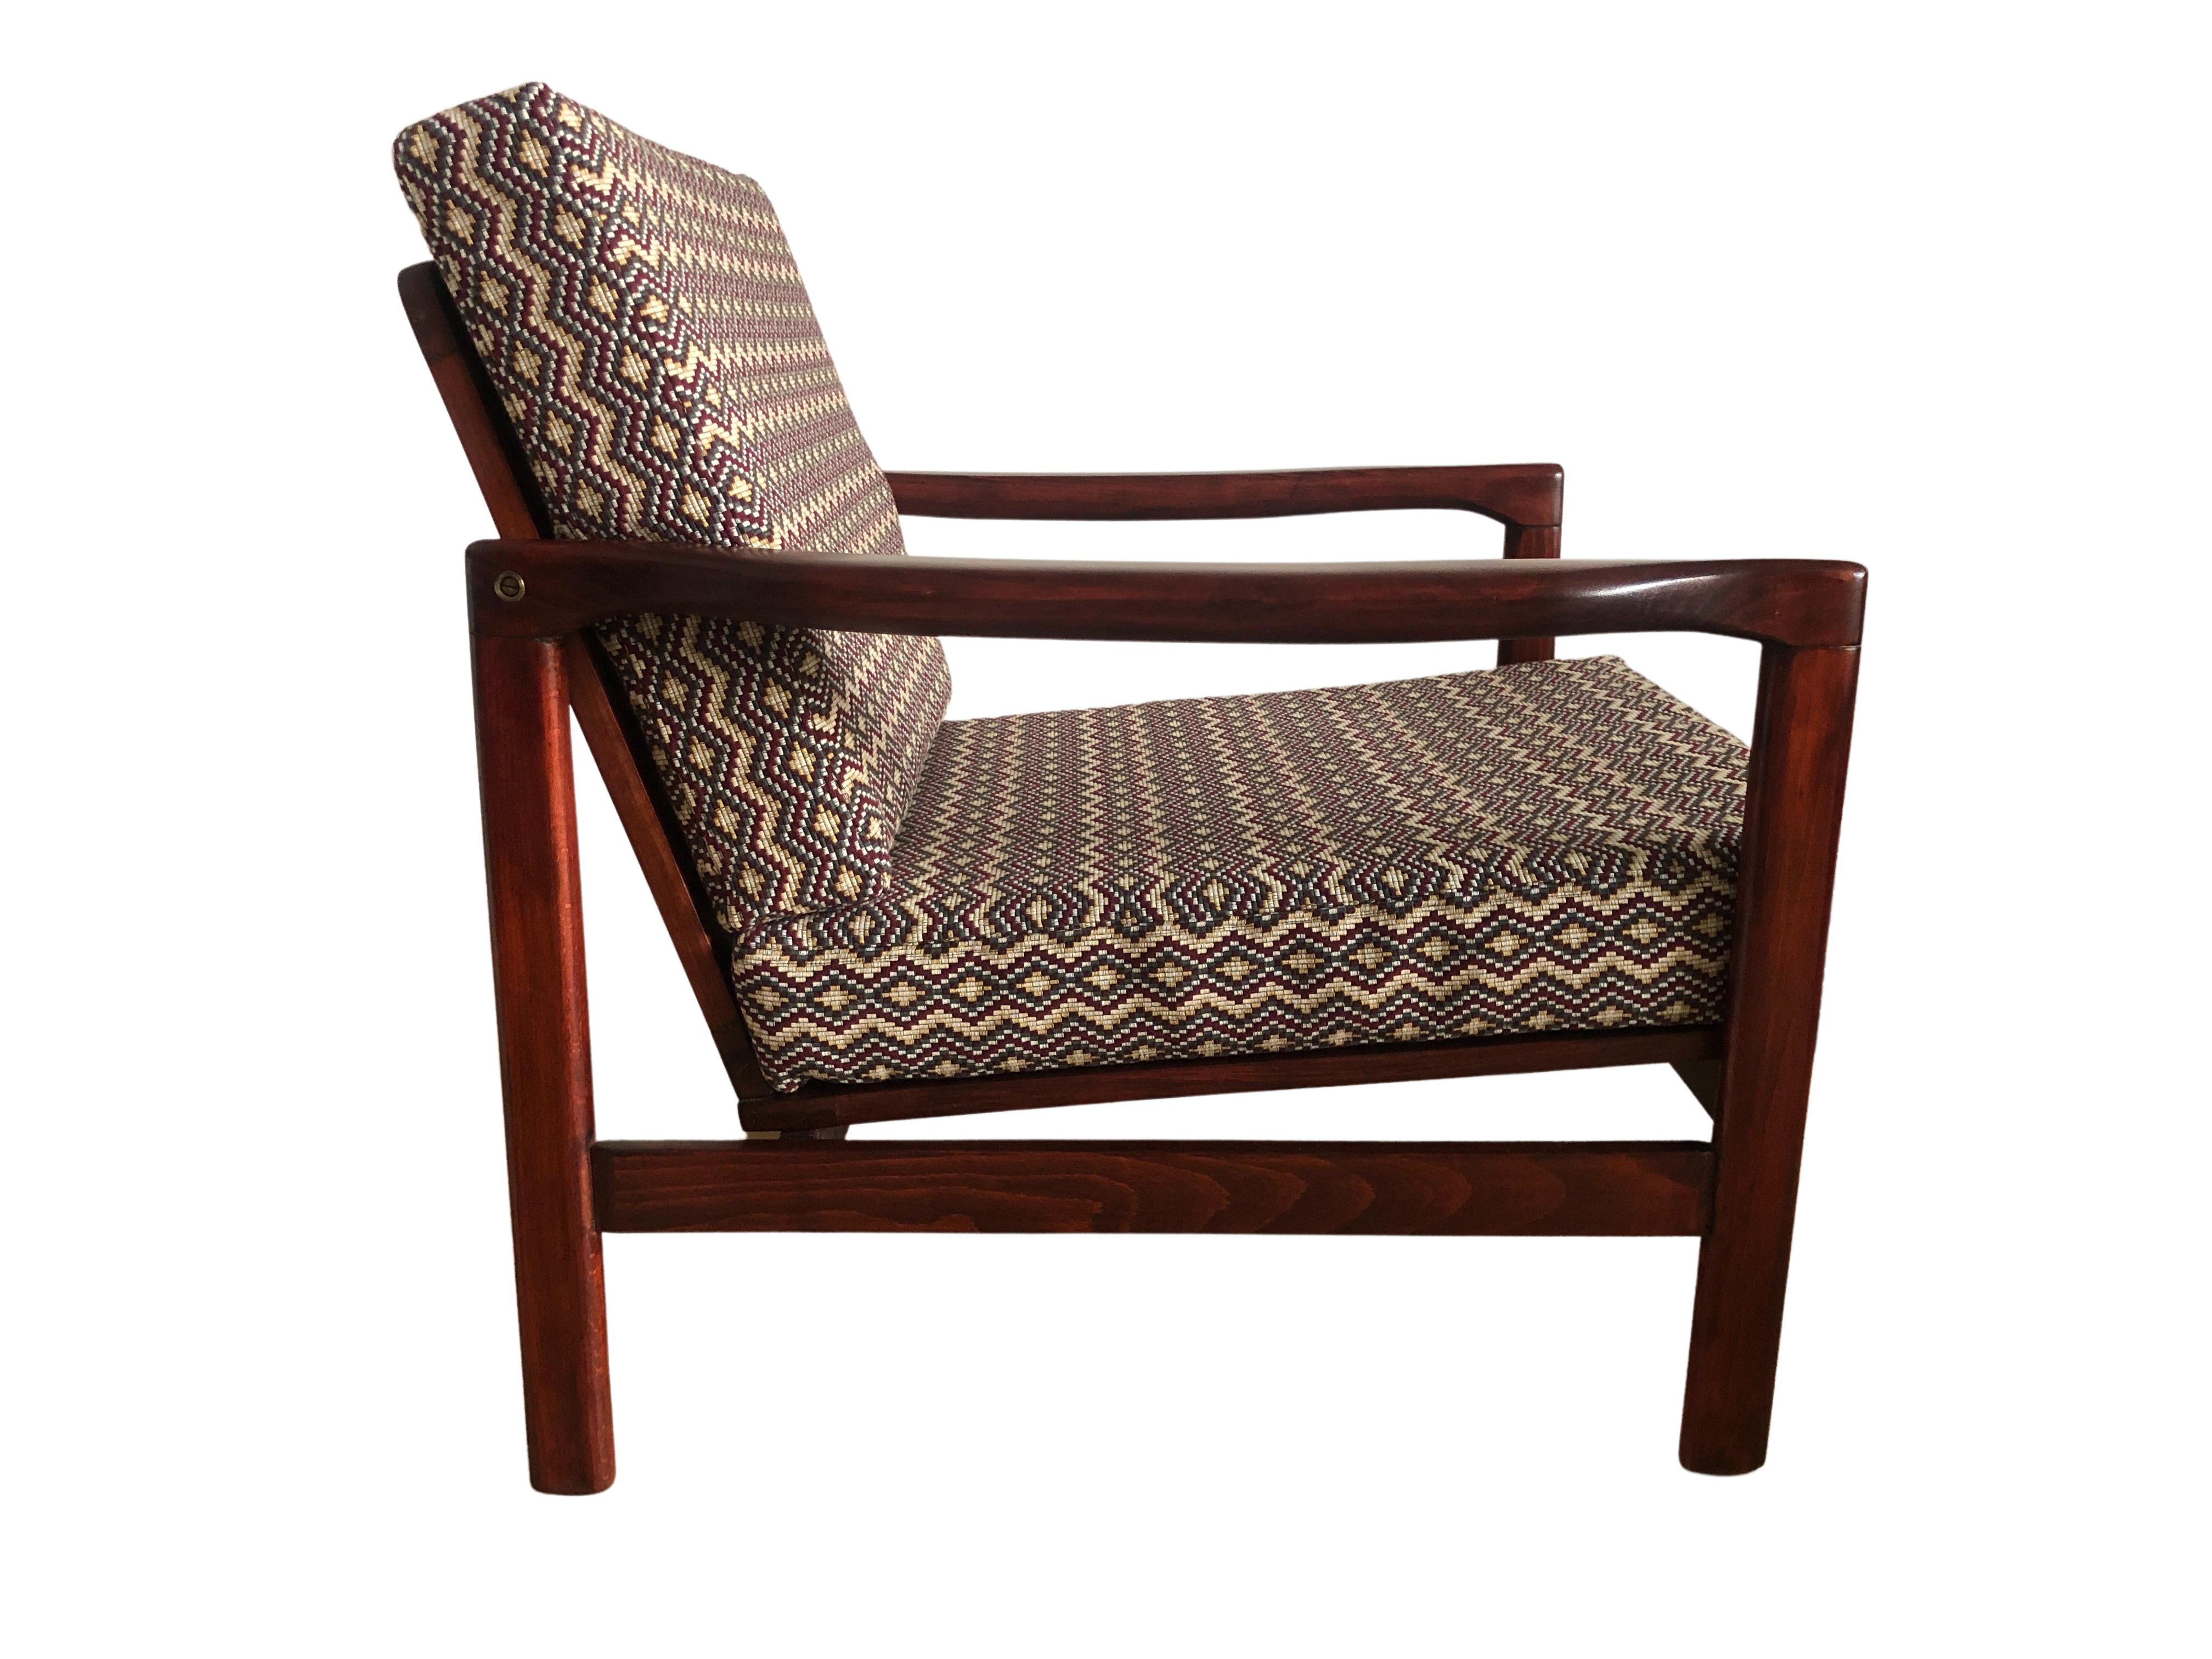 Das von Zenon Baczyk entworfene Sesselmodell B-7752 wurde in den 1960er Jahren von Swarzedzkie Fabryki Mebli in Polen hergestellt. 

Die Struktur ist aus tiefbraunem Buchenholz gefertigt und mit einem seidenmatten Lack versehen. 

Die Polsterung ist